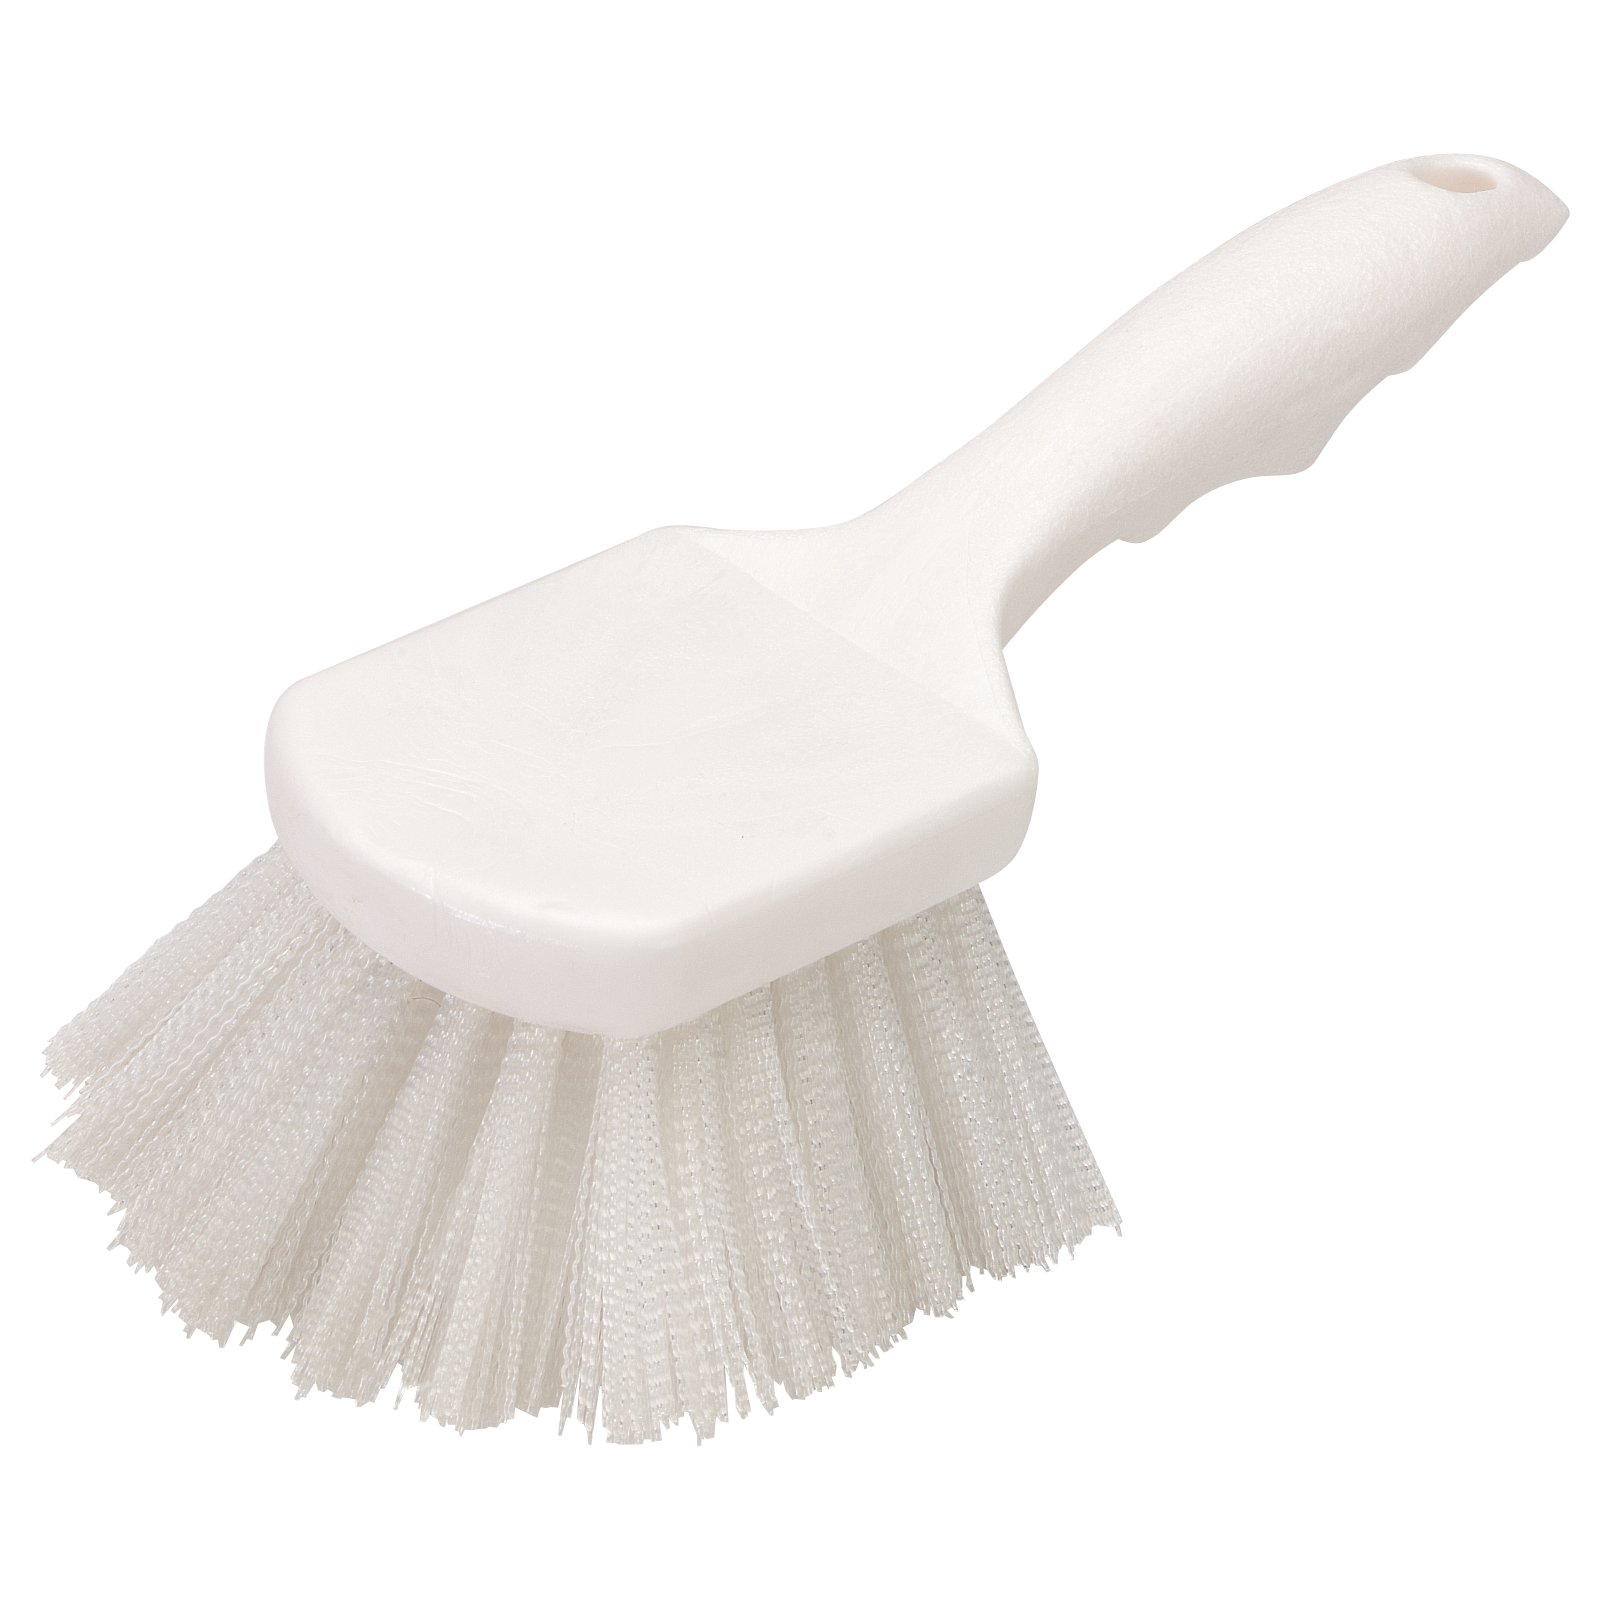 3662000 - Flo-Pac® Utility Scrub Brush With Nylon Bristles 8 - White